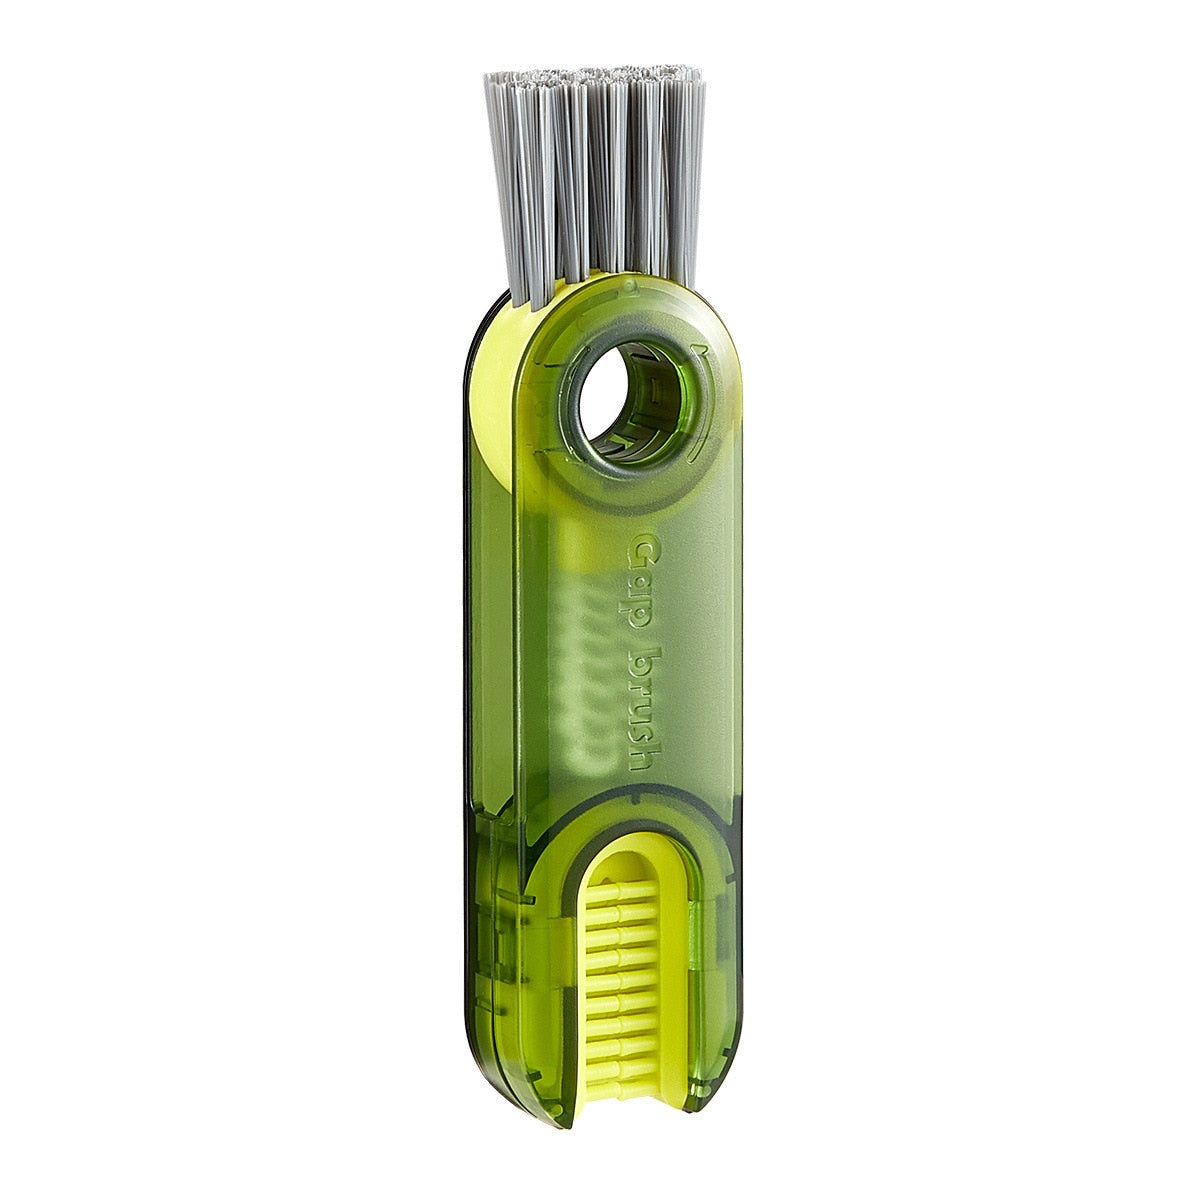  Clean Bottle Brush sold by Fleurlovin, Free Shipping Worldwide